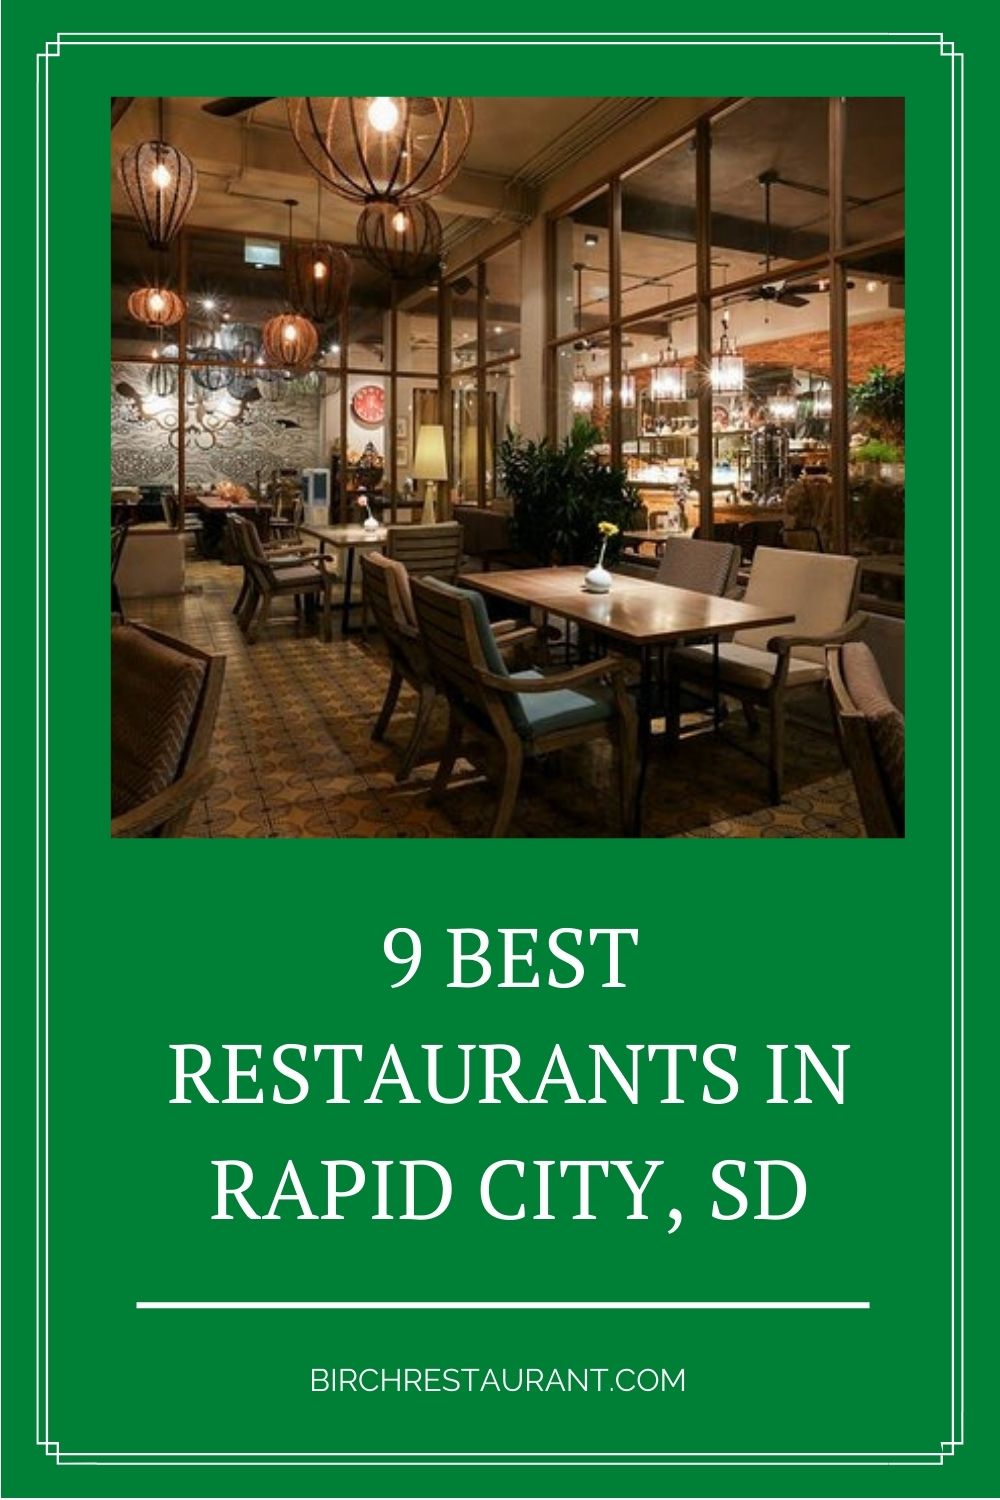 Best Restaurants in Rapid City